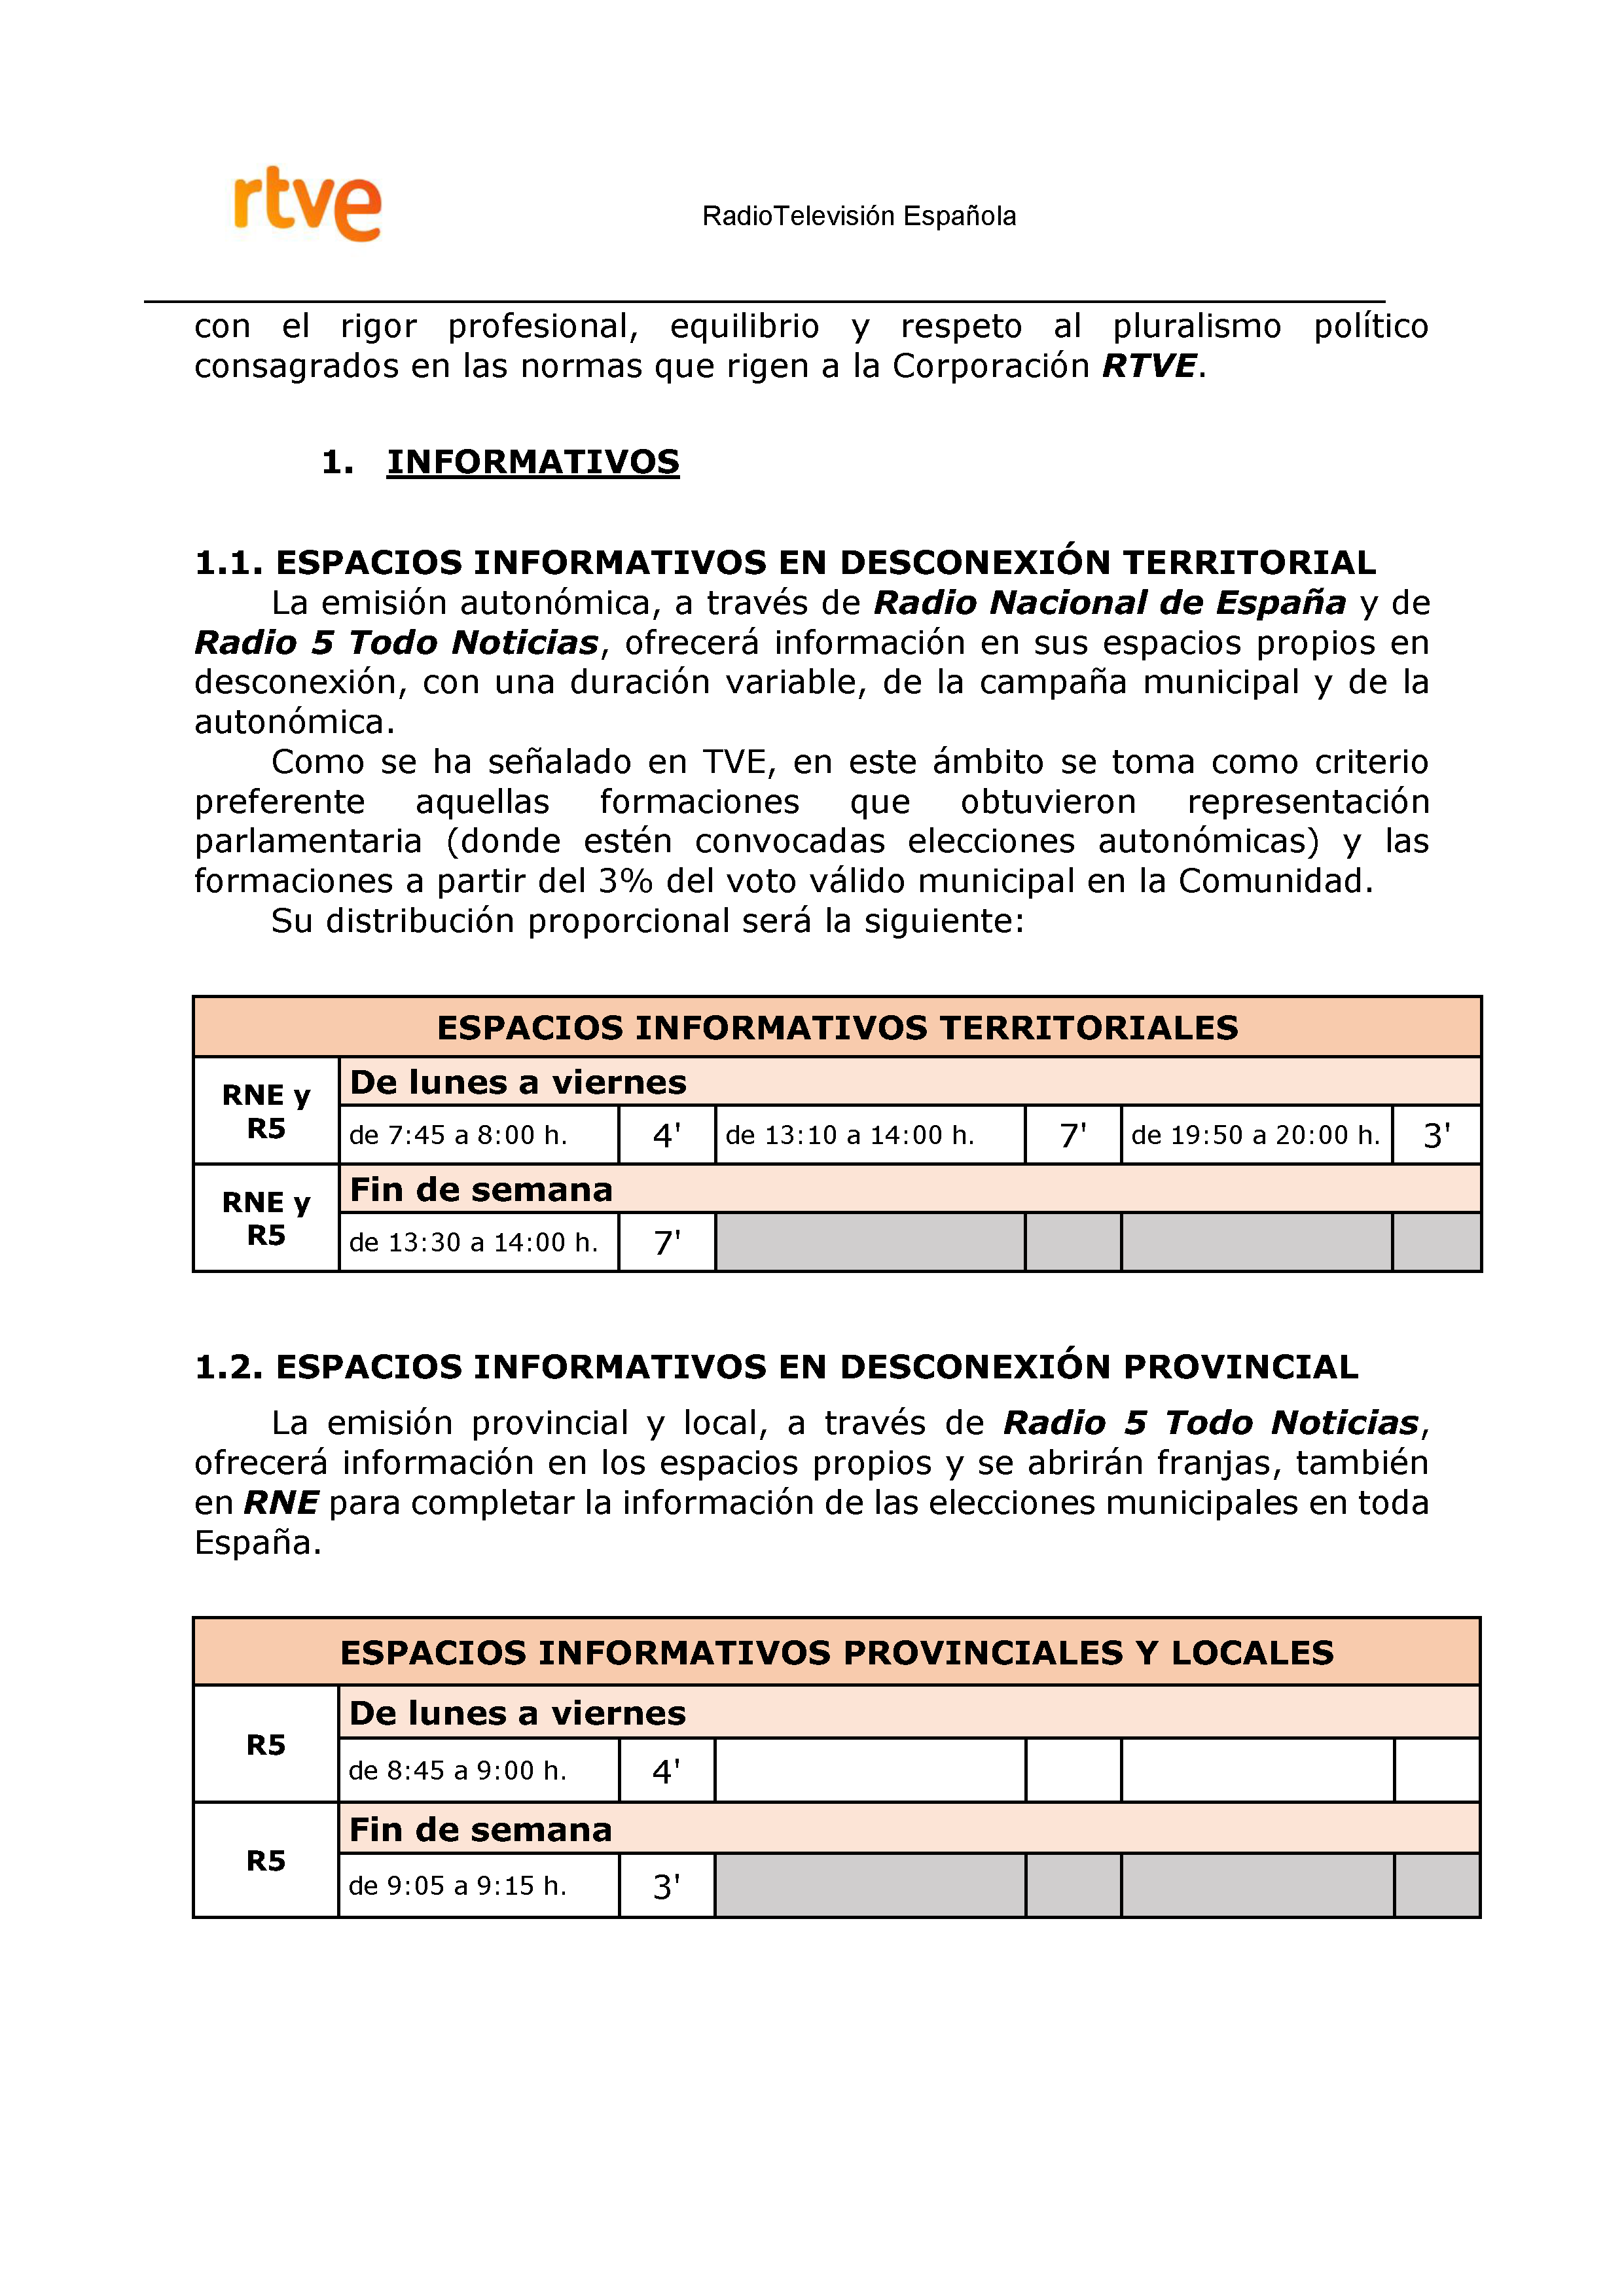 PLAN DE COBERTURA INFORMATIVA RTVE en Extremadura ELECCIONES MUNICIPALES Y AUTONÃ“MICAS Pag 10